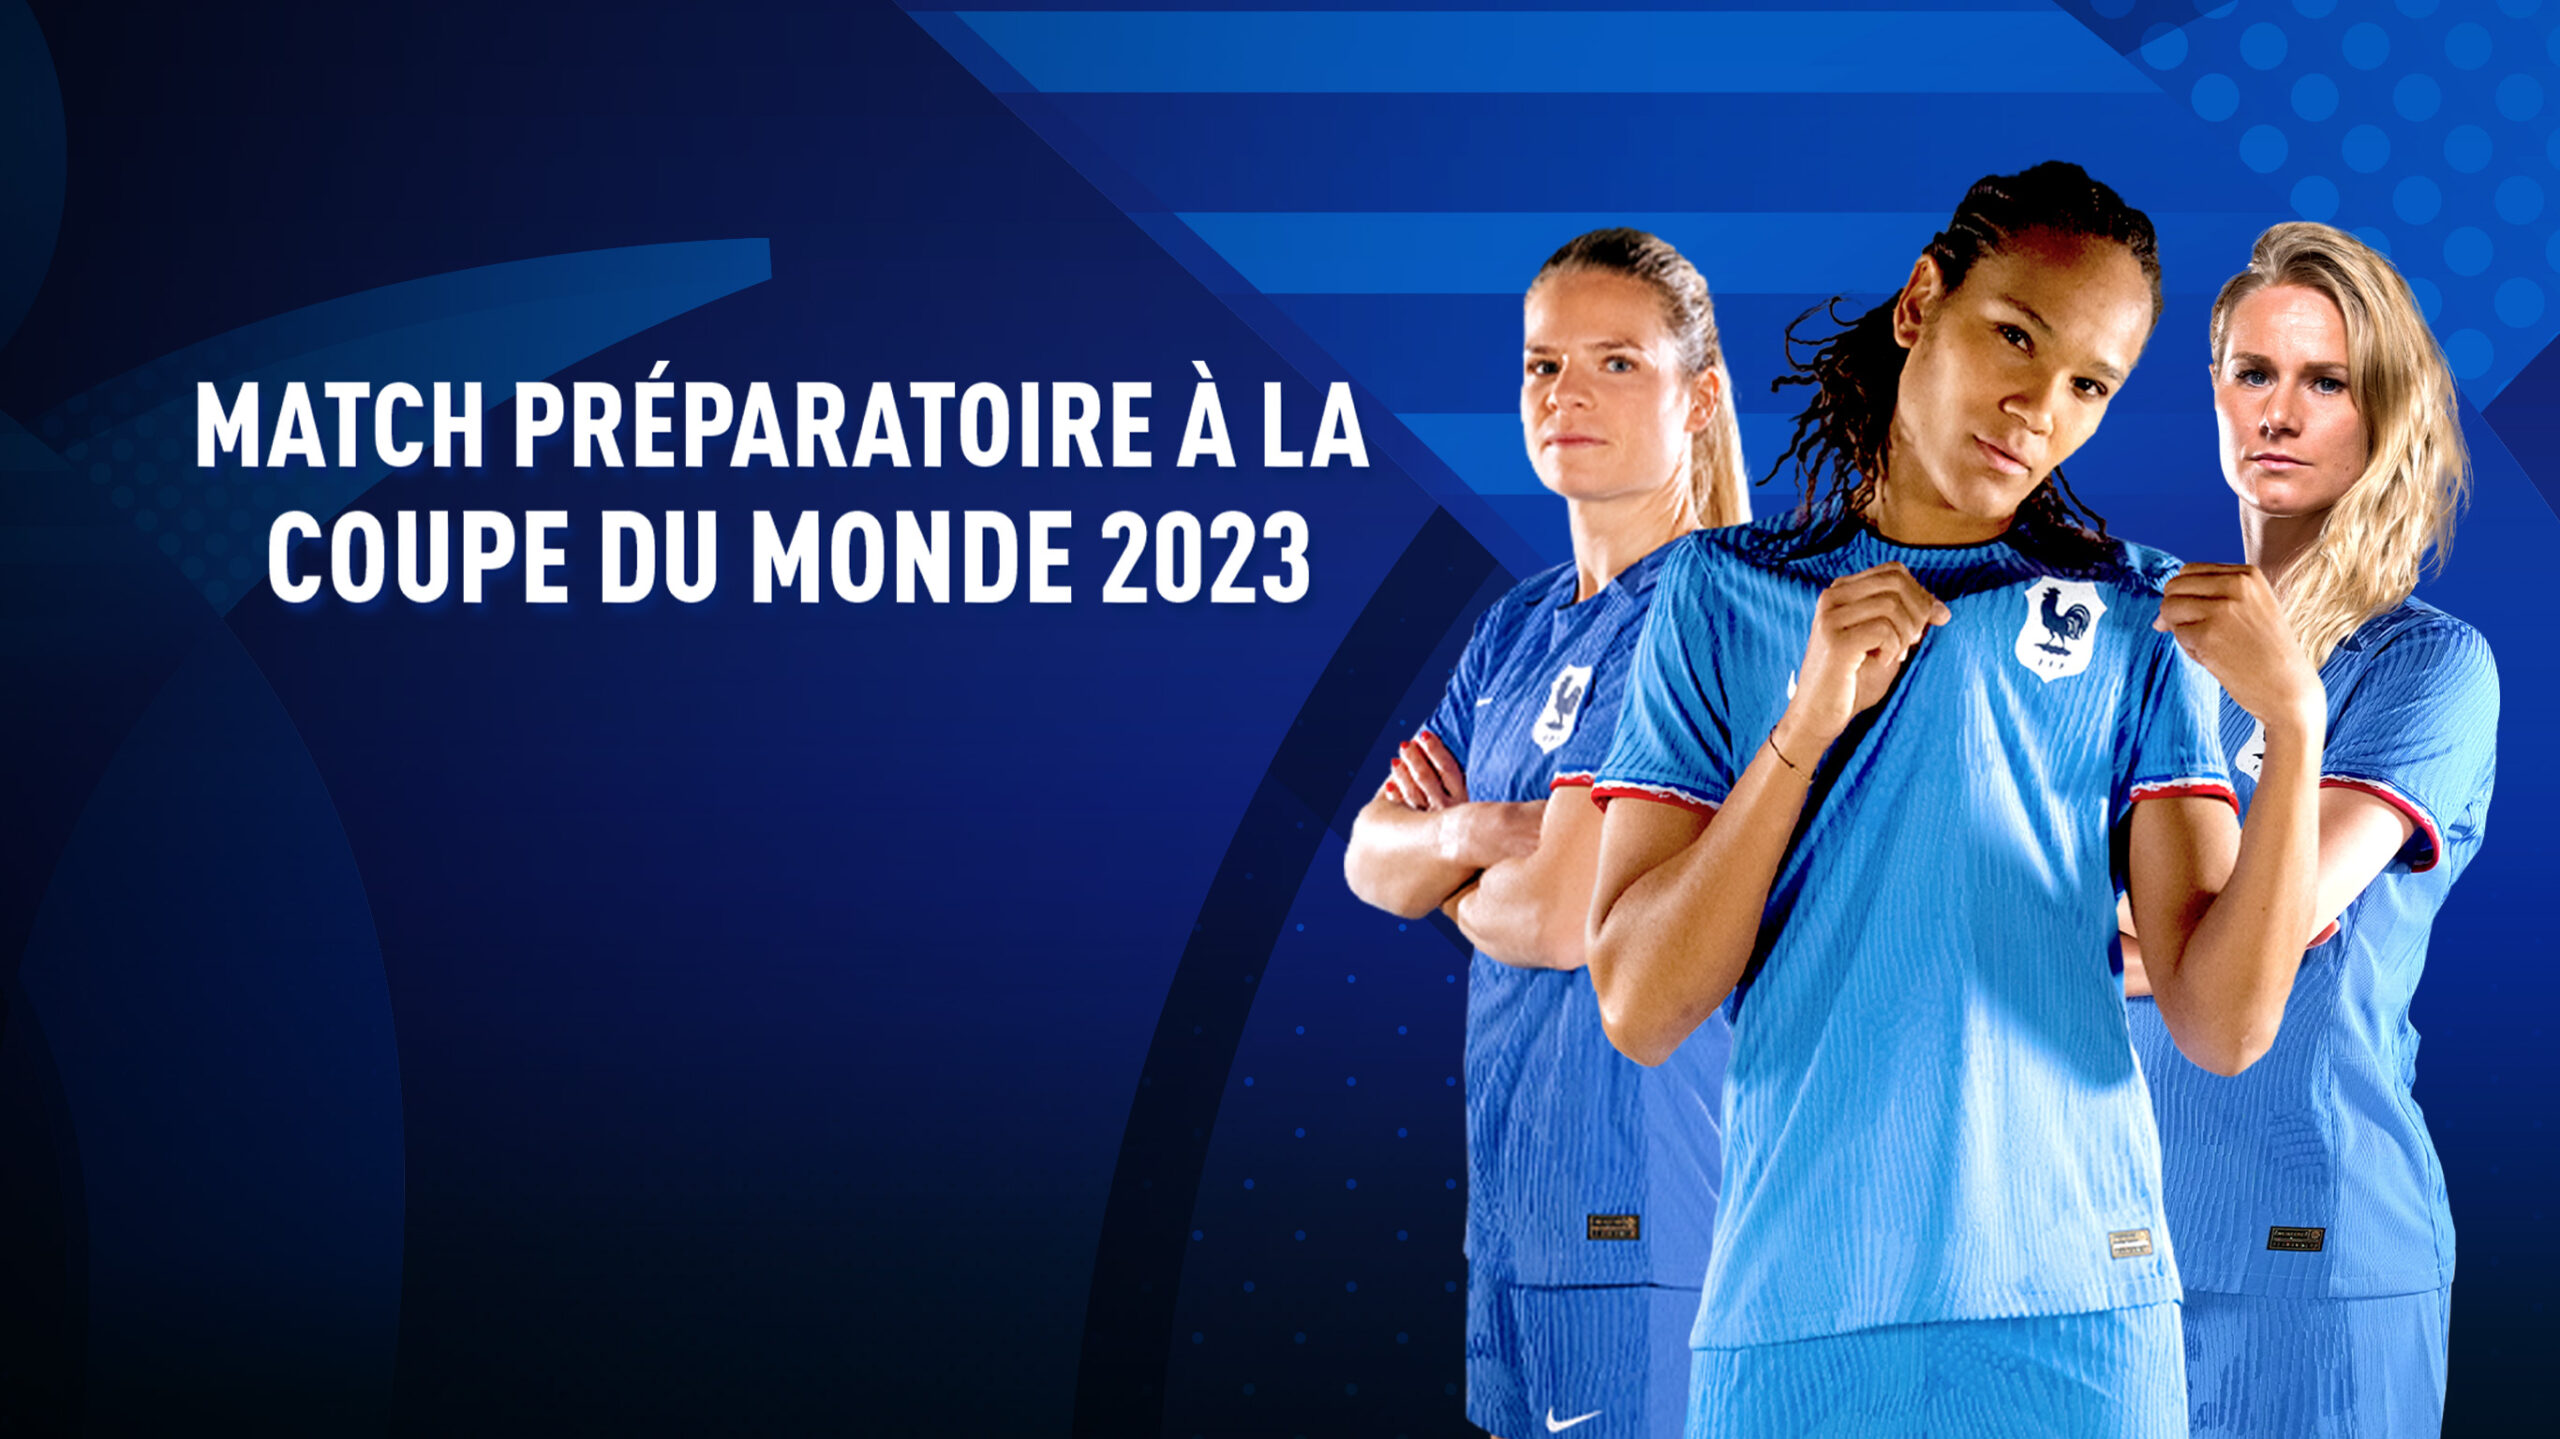 Match-preparatoire-à-la-coupe-du-monde-2023